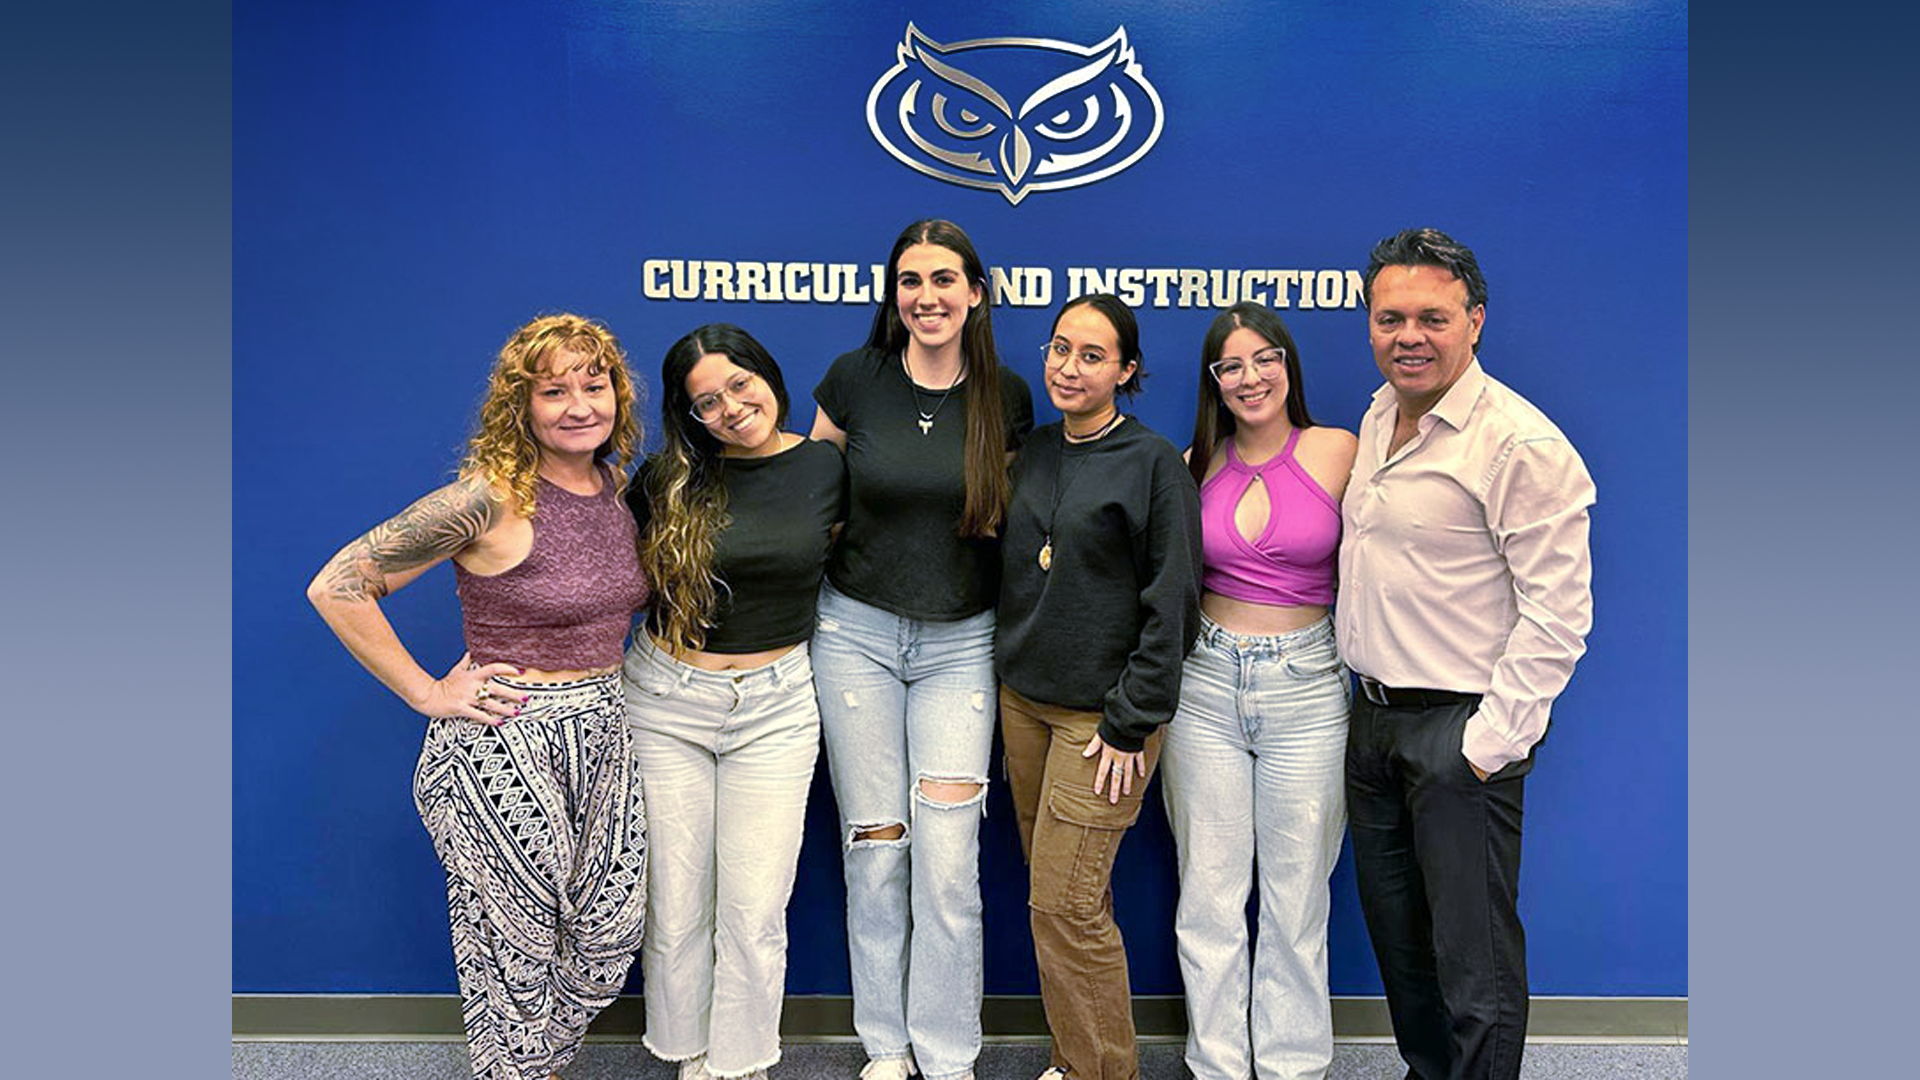 From left to Right: Angela D. Nichols, Ph.D., Lina Sofía Vásquez, Brooke Zimmerman, Isa Marin, Salomé Díaz Gómez and Andrés Ramírez, Ph.D.